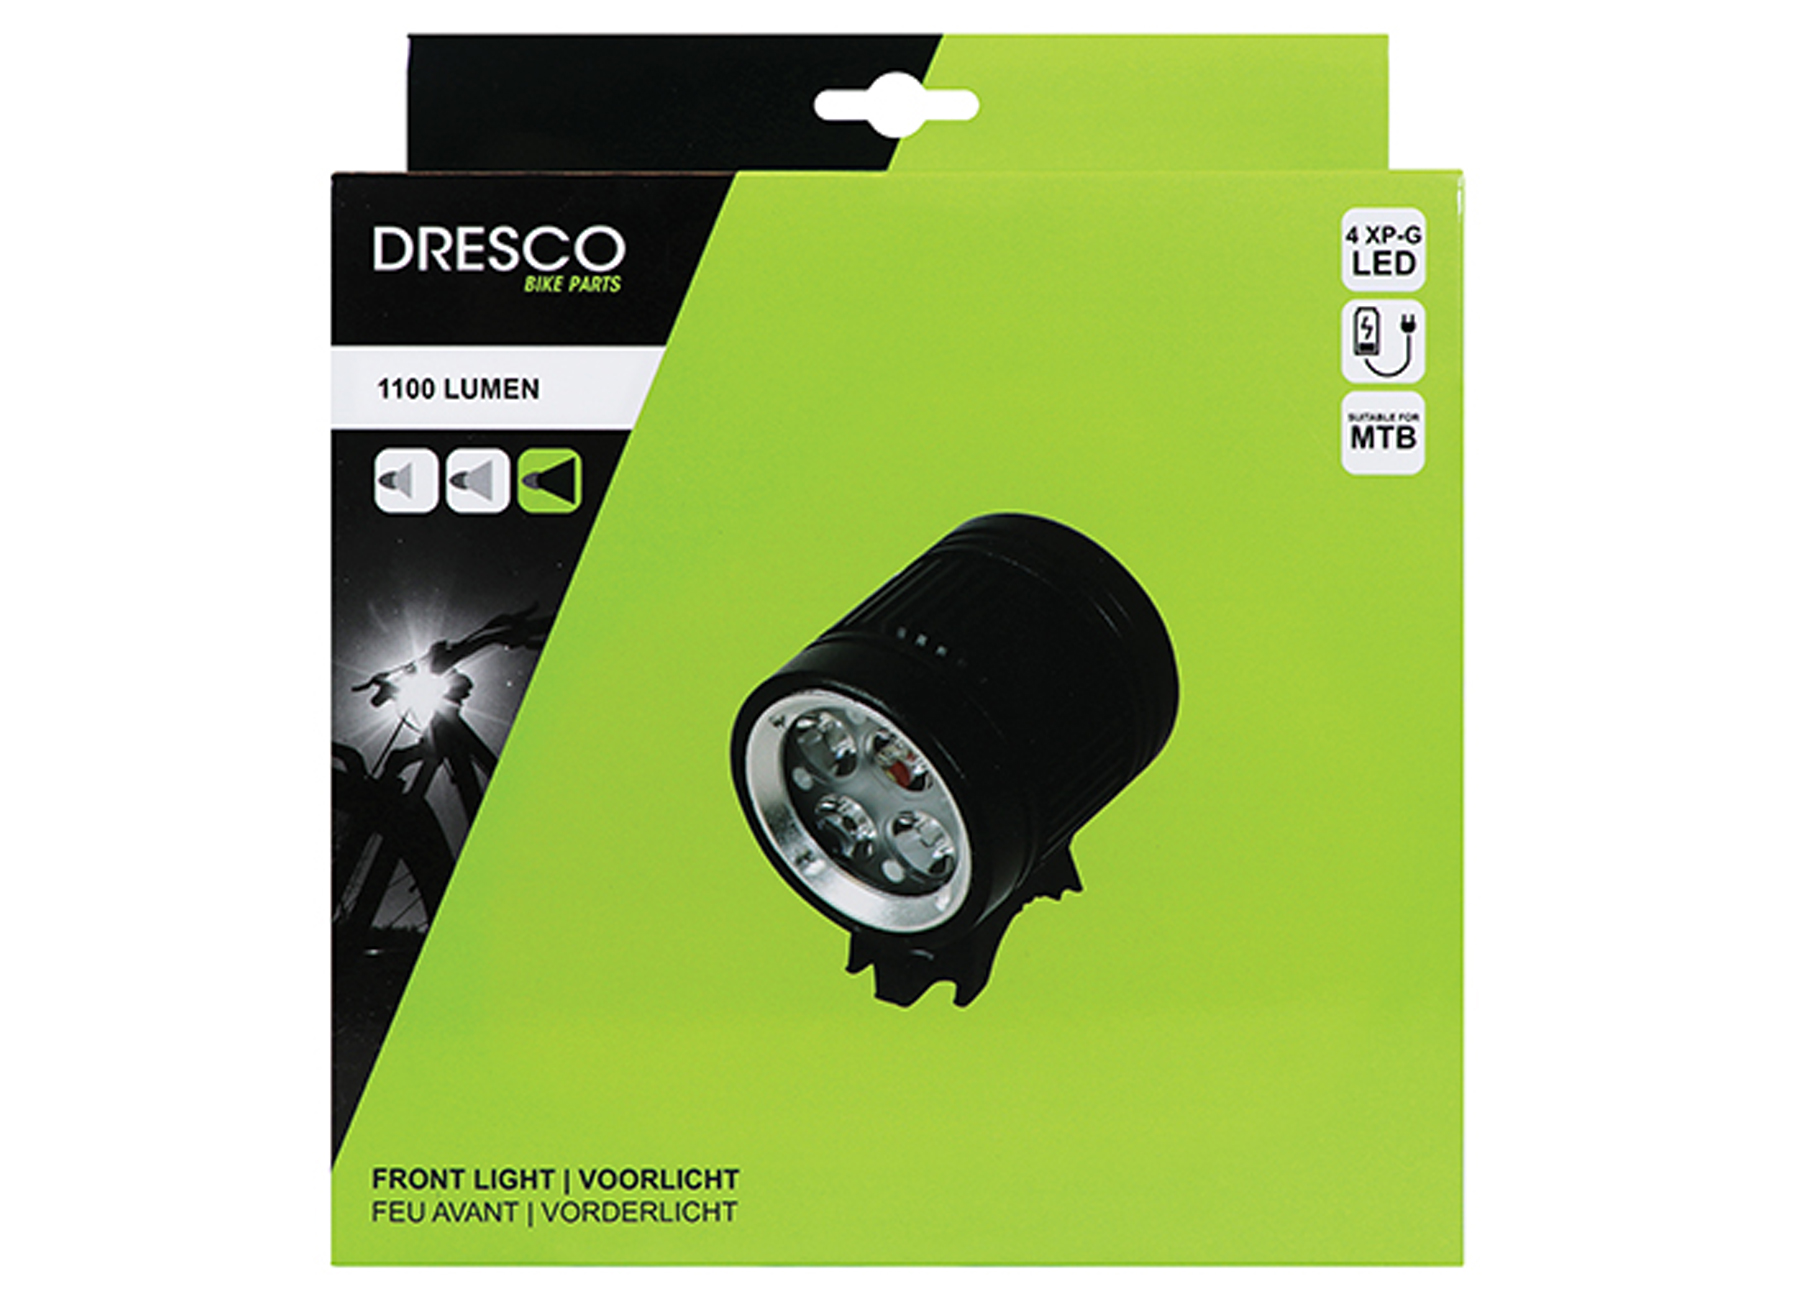 DRESCO XP-G LED KOPLAMP 1100 LUMEN